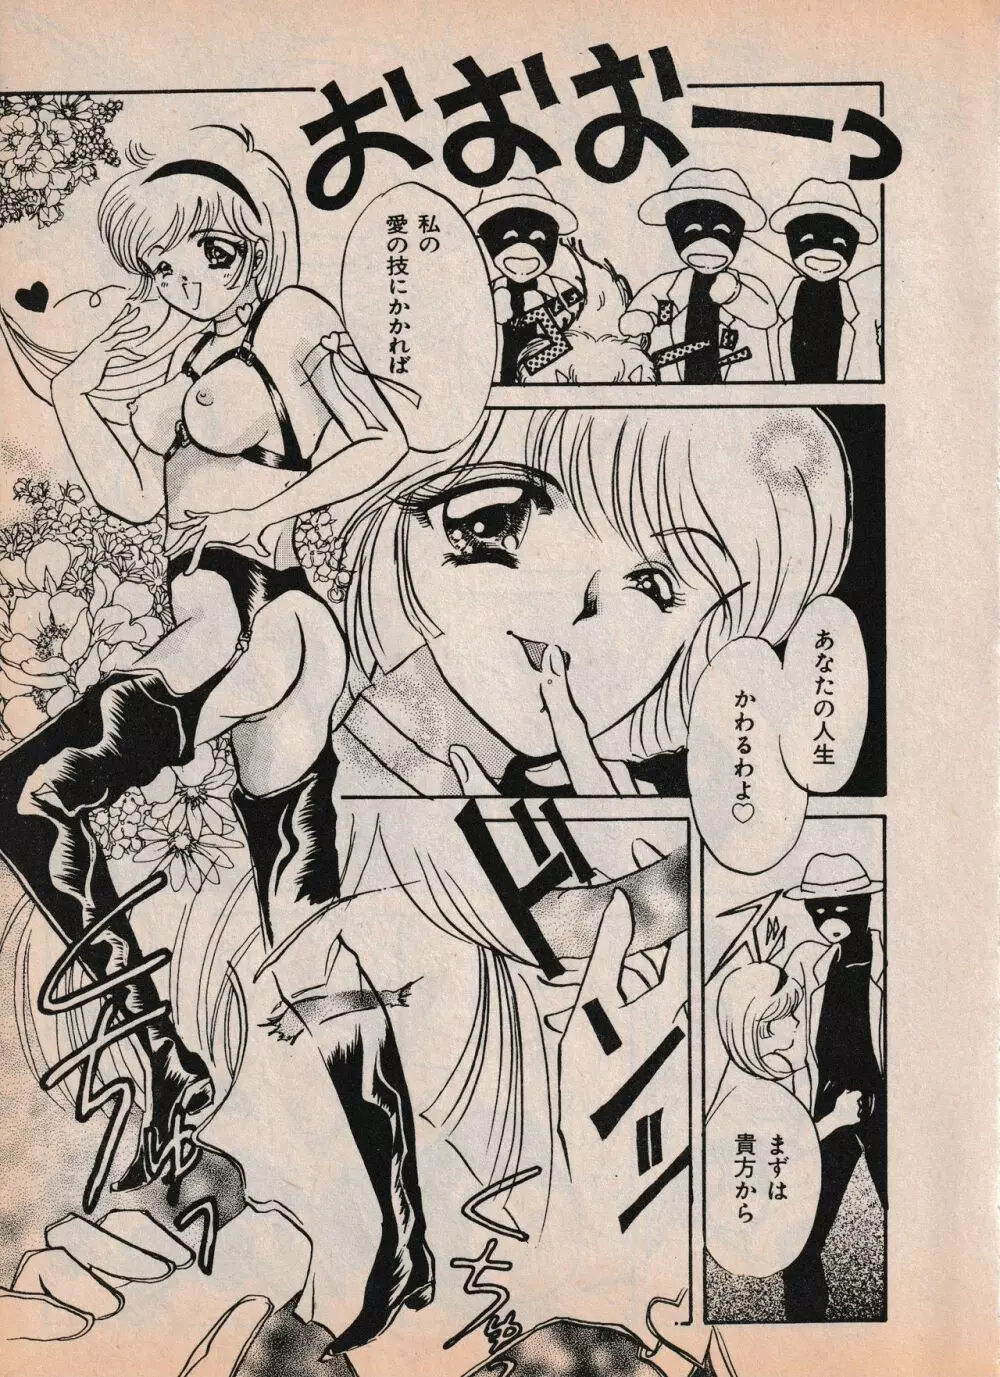 Sailor X vol. 4 – Sailor X vs. Cunty Horny! 72ページ